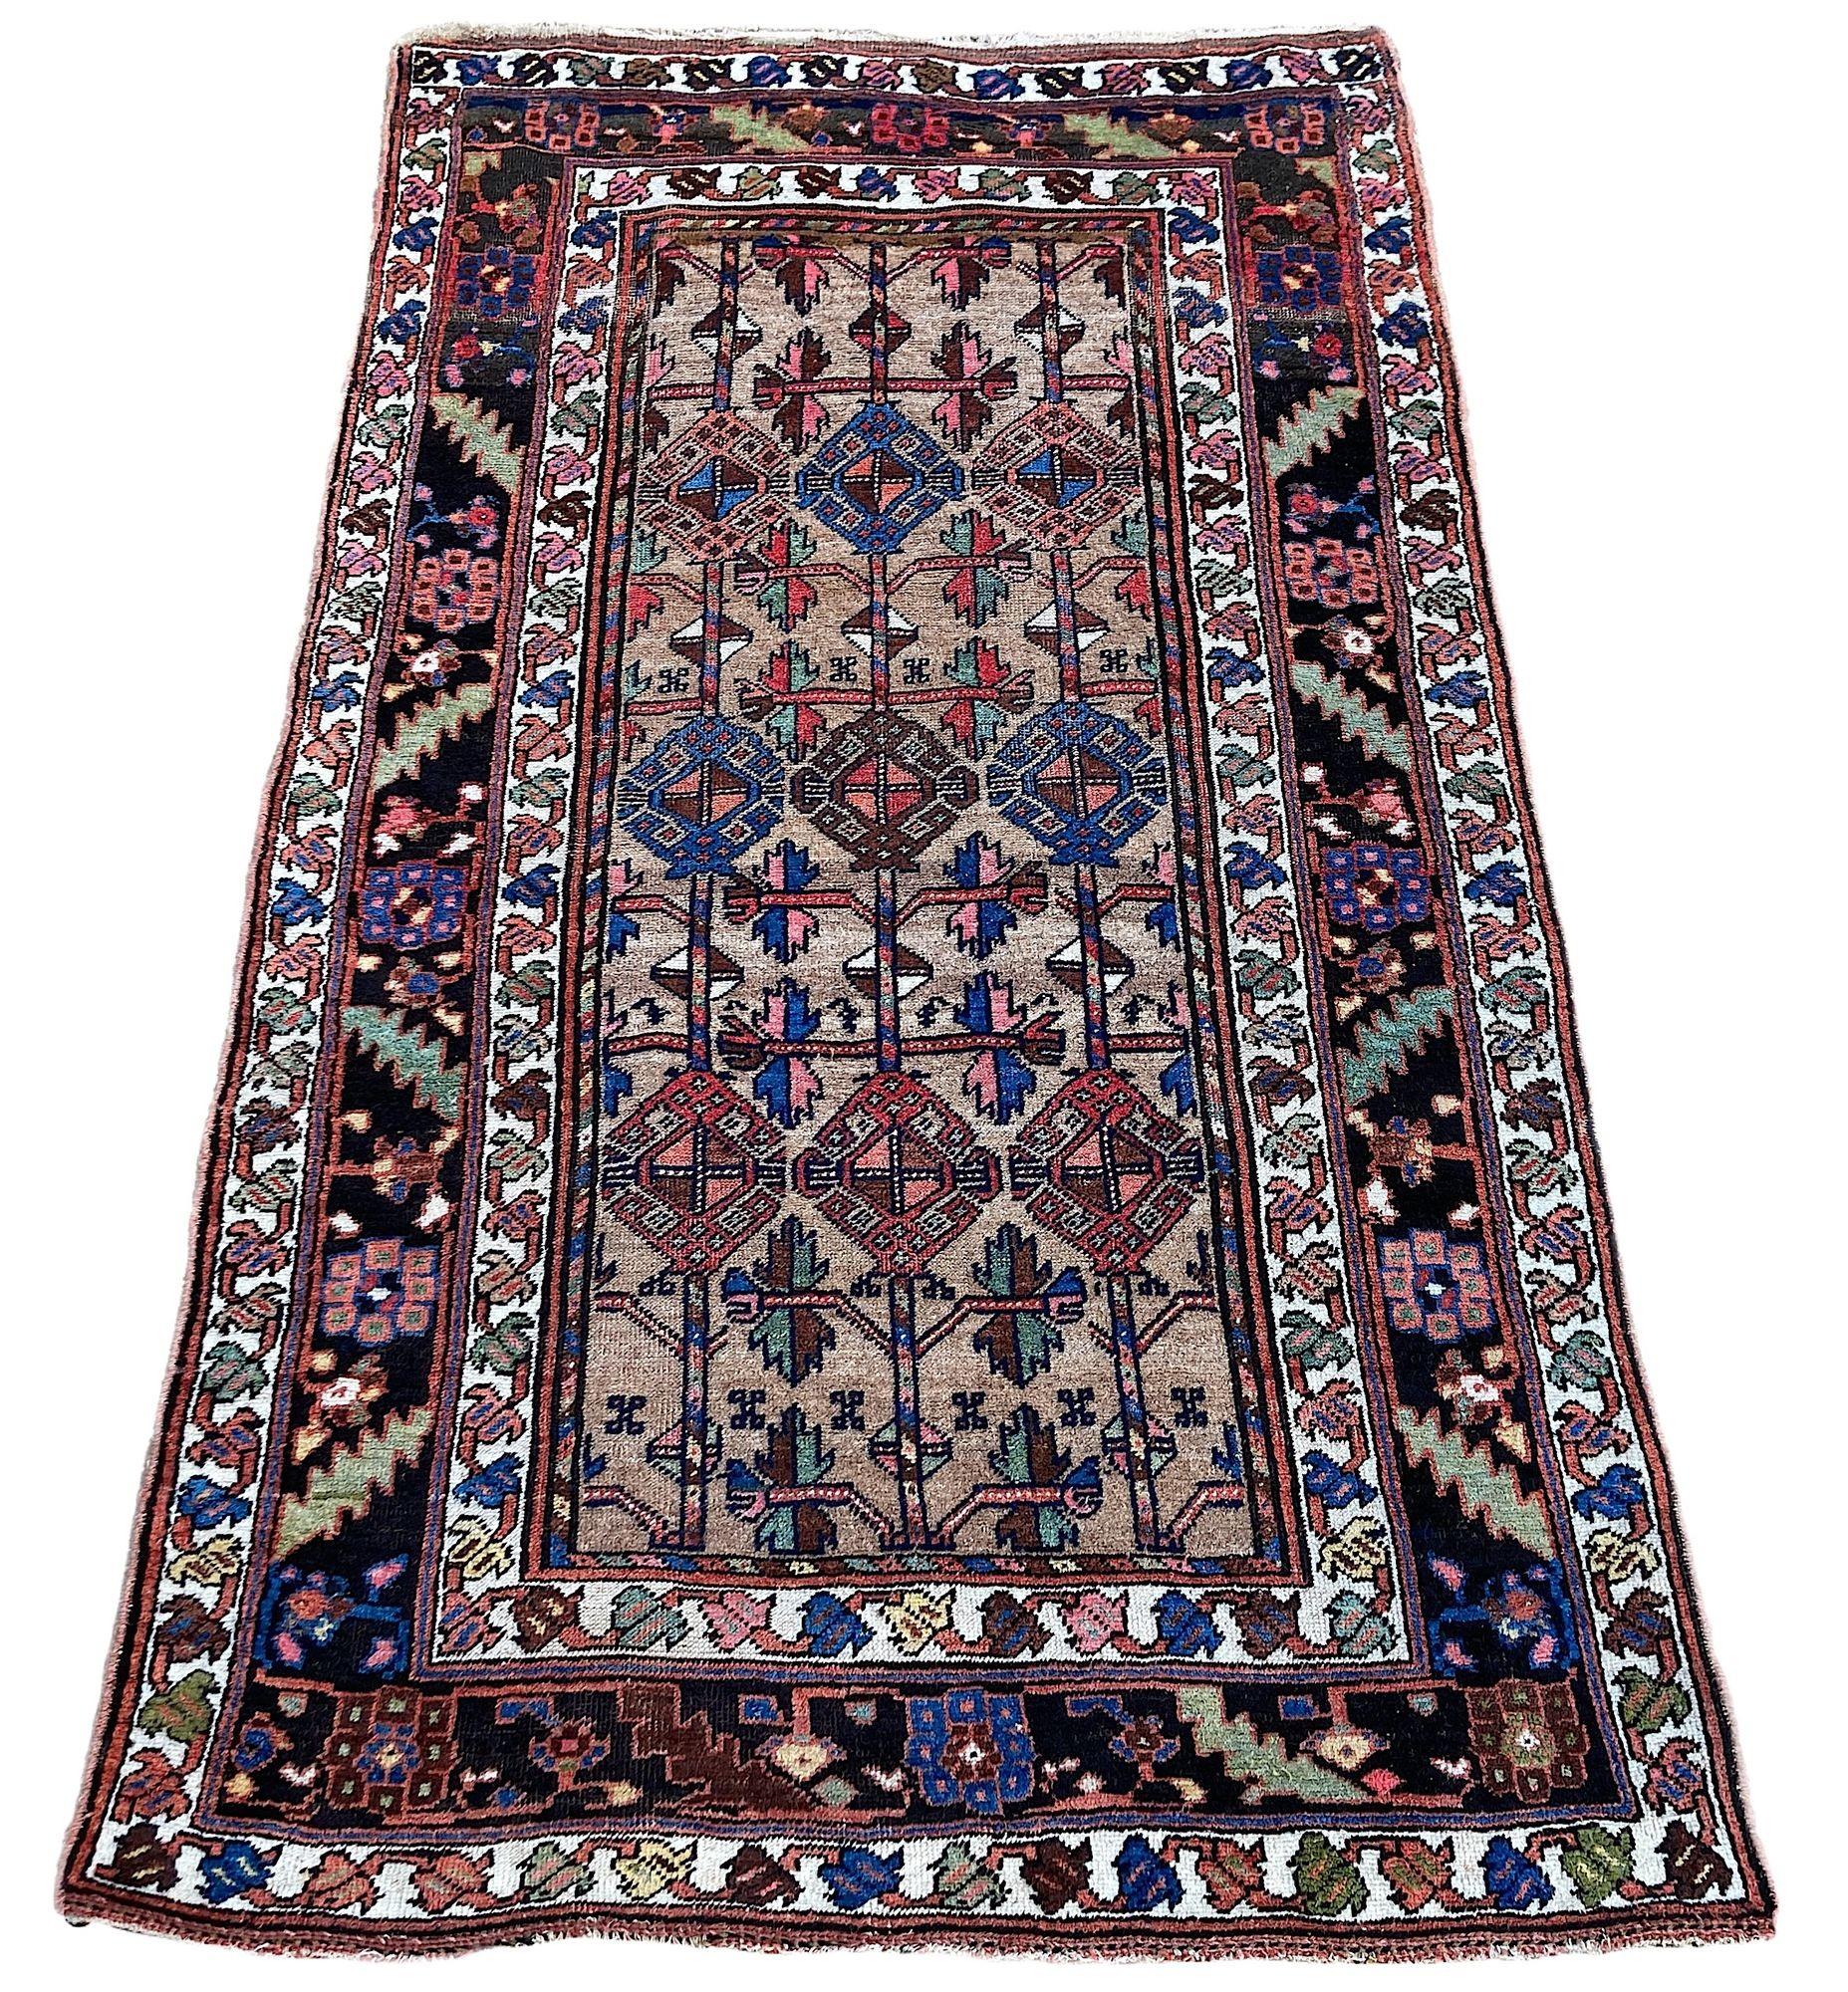 Magnifique tapis ancien, tissé à la main par des Kurdes nomades vers 1900. Le tapis présente un motif géométrique sur un champ camel inhabituel et une bordure indigo profonde. De magnifiques couleurs secondaires, vertes, roses et bleues, et un bel